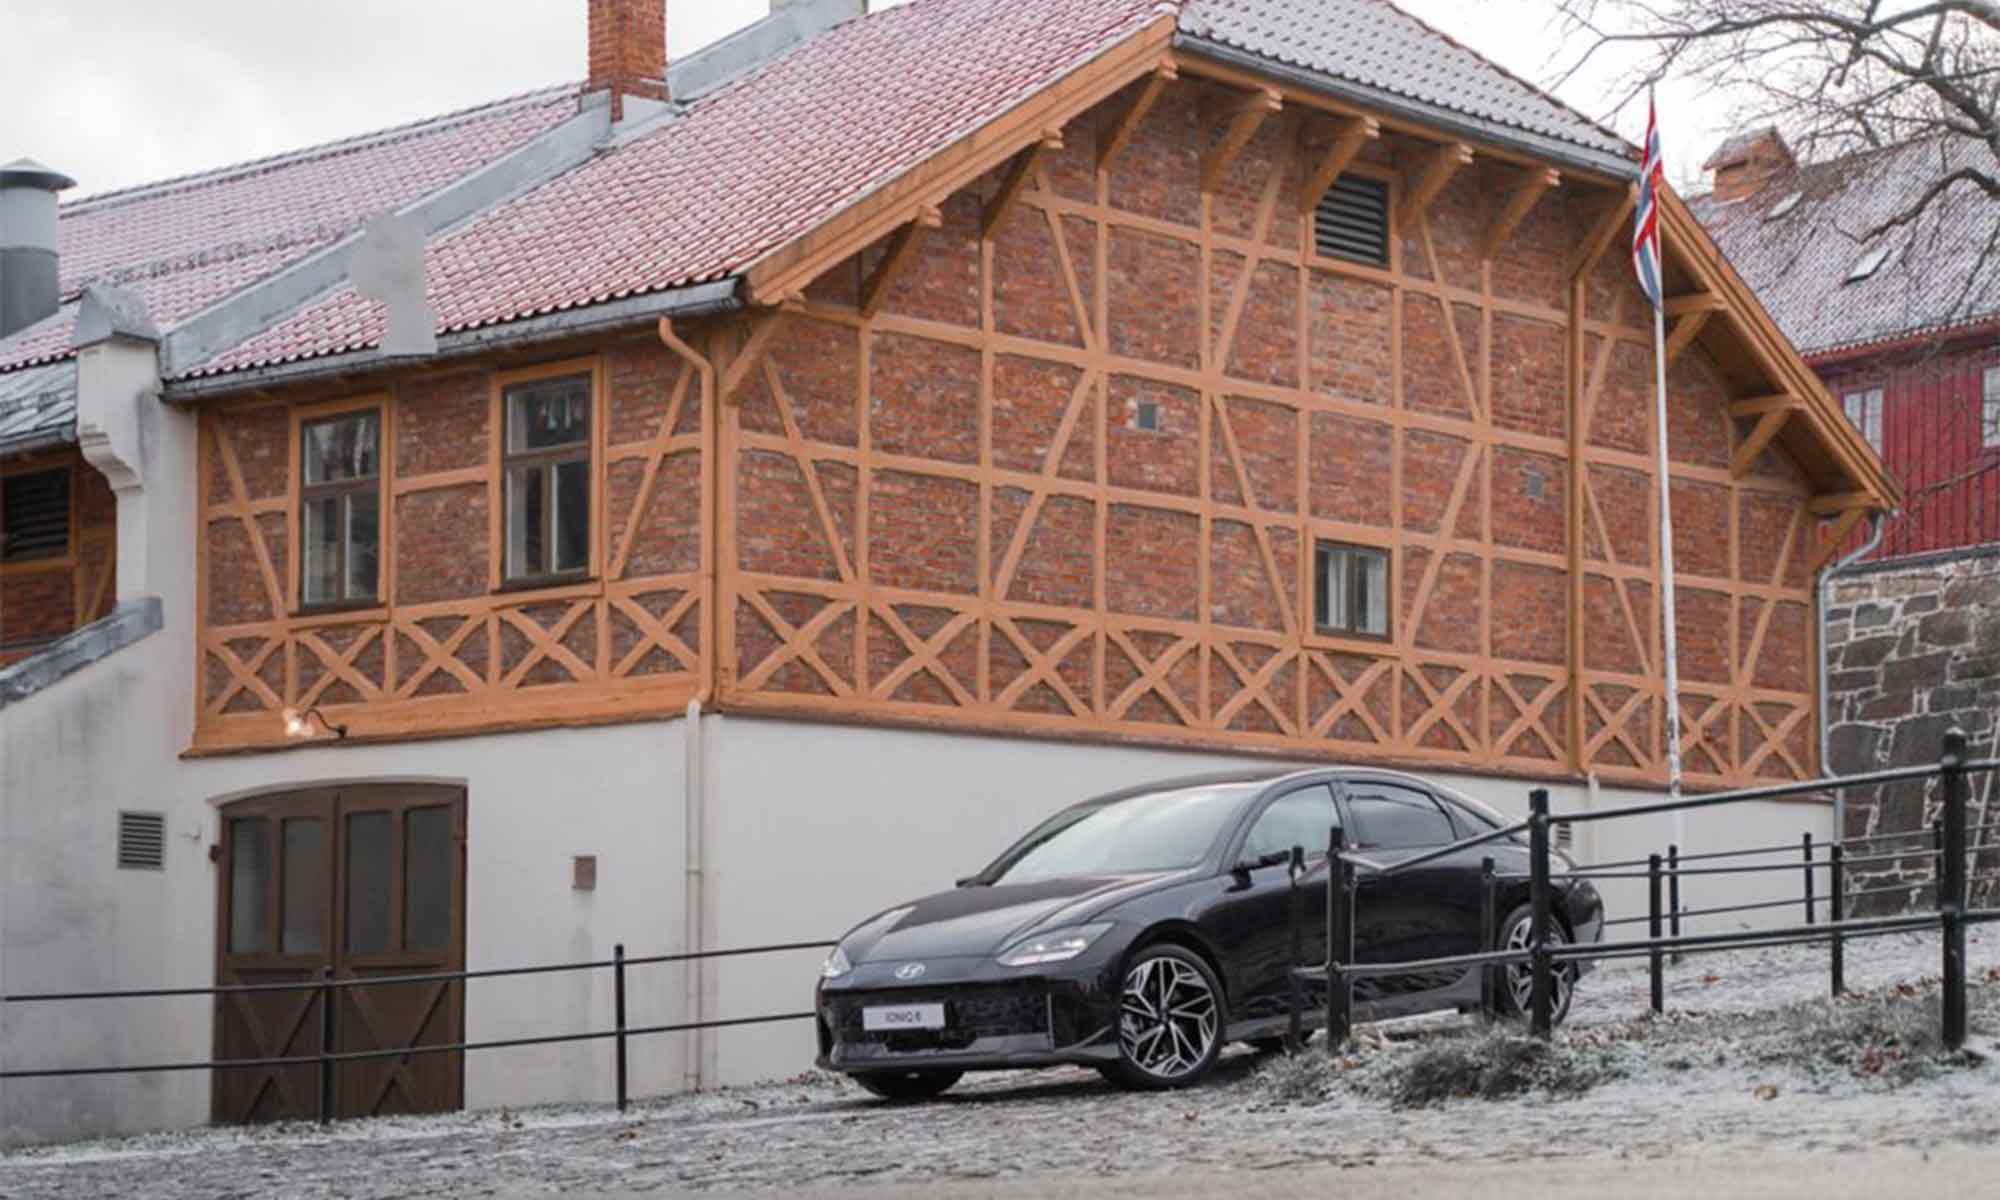 Storica svolta di Hyundai in Norvegia: dal 1° gennaio 2023 venderà solo auto elettriche 11